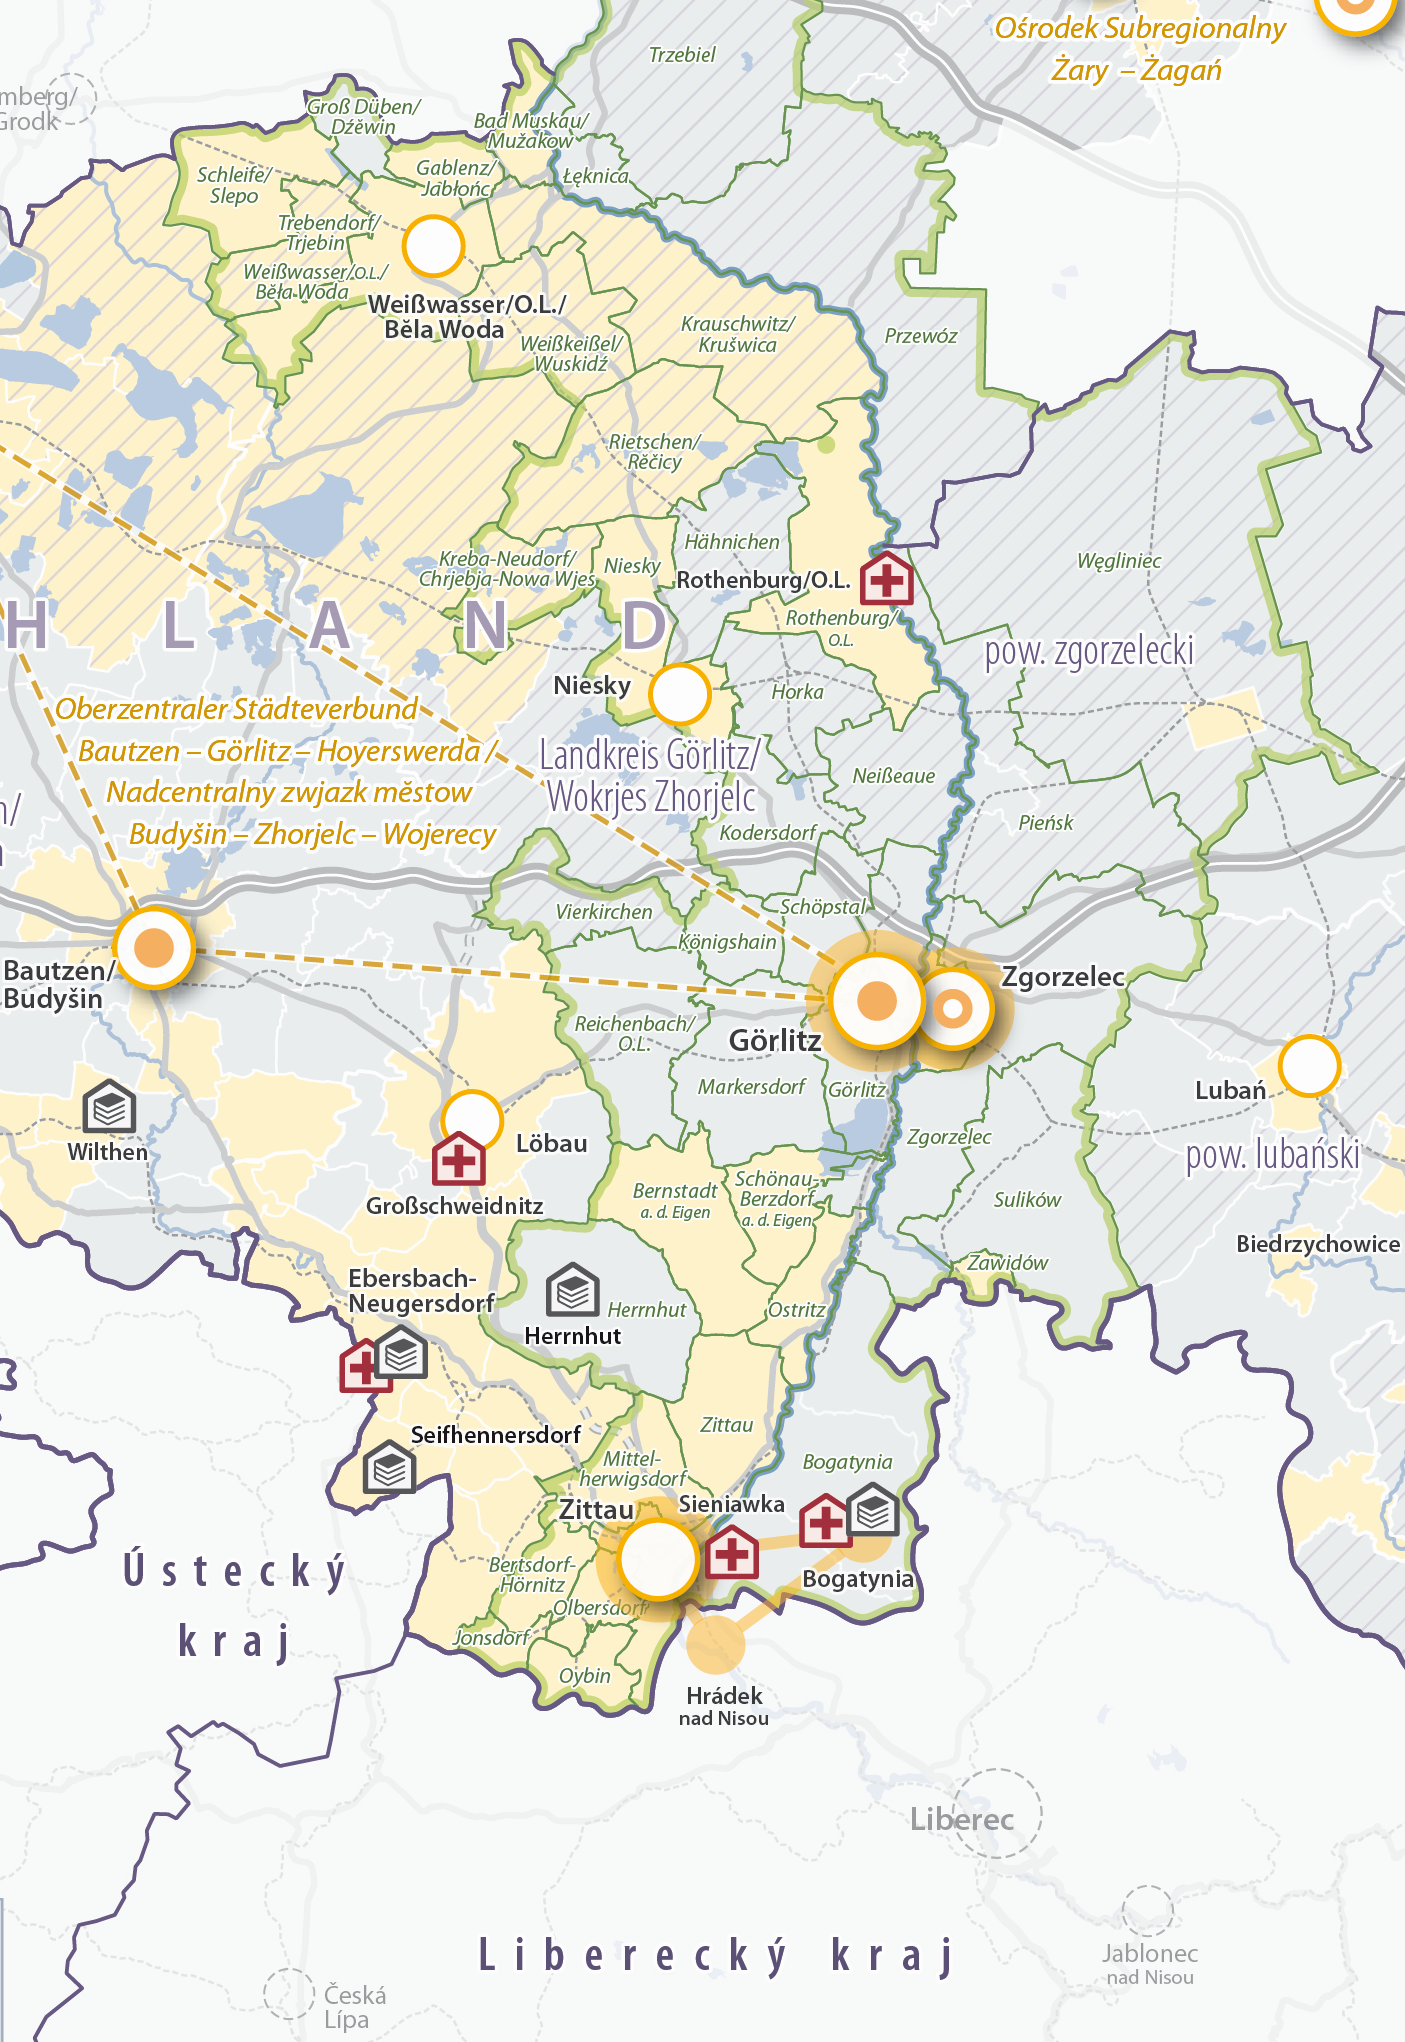 Grenzraumstudie für den Sächsisch-Niederschlesischen Grenzraum, Karte Daseinsvorsorge / Dostęp do dóbr i usług (Ausschnitt), © SMR